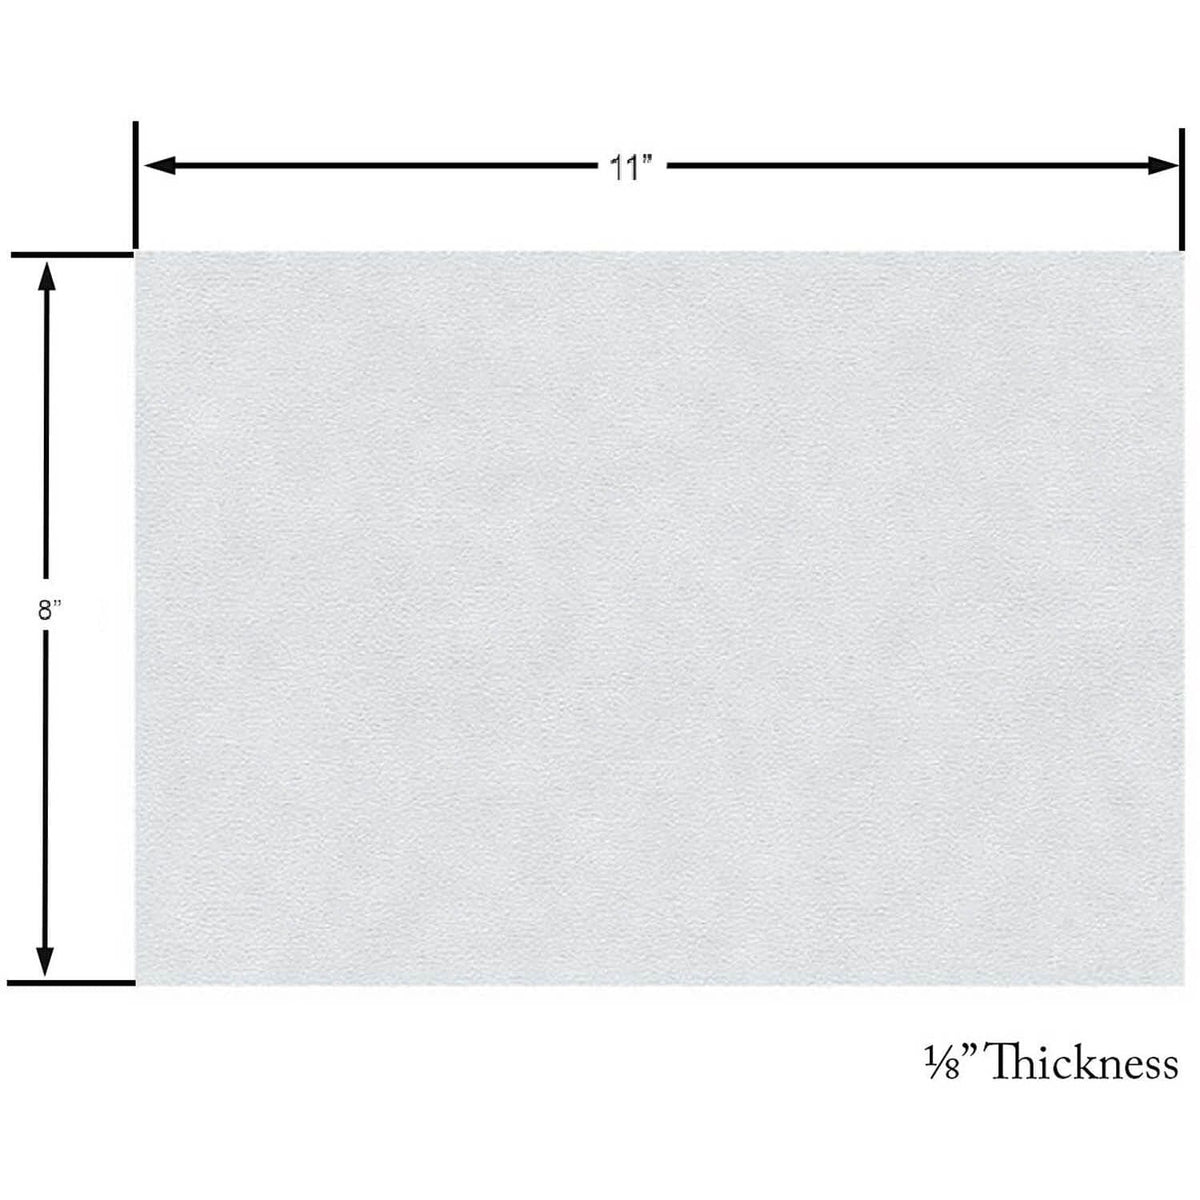 Maniglass Generic Gasket Paper. Cut To Fit, 11 x 8 x 1/8